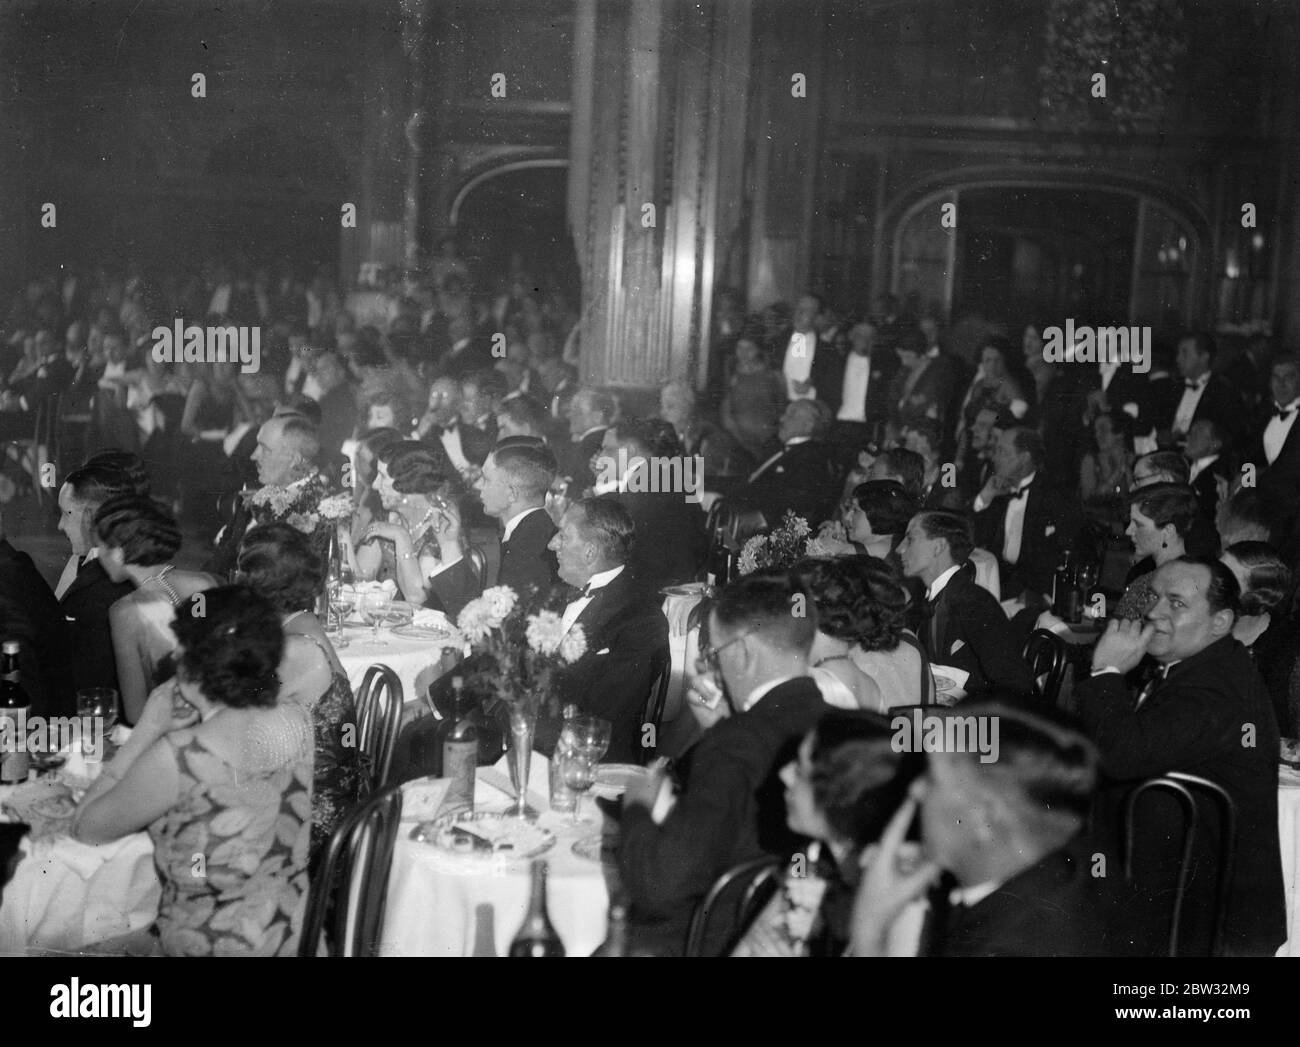 Jetzt kehrt die Wahl zum Präsidenten des West End zurück. Wahlnachtler im piccadilly Hotel halten in ihrem Tanz, um die Parlamentswahlen wieder zu hören. 28. Oktober 1931 Stockfoto